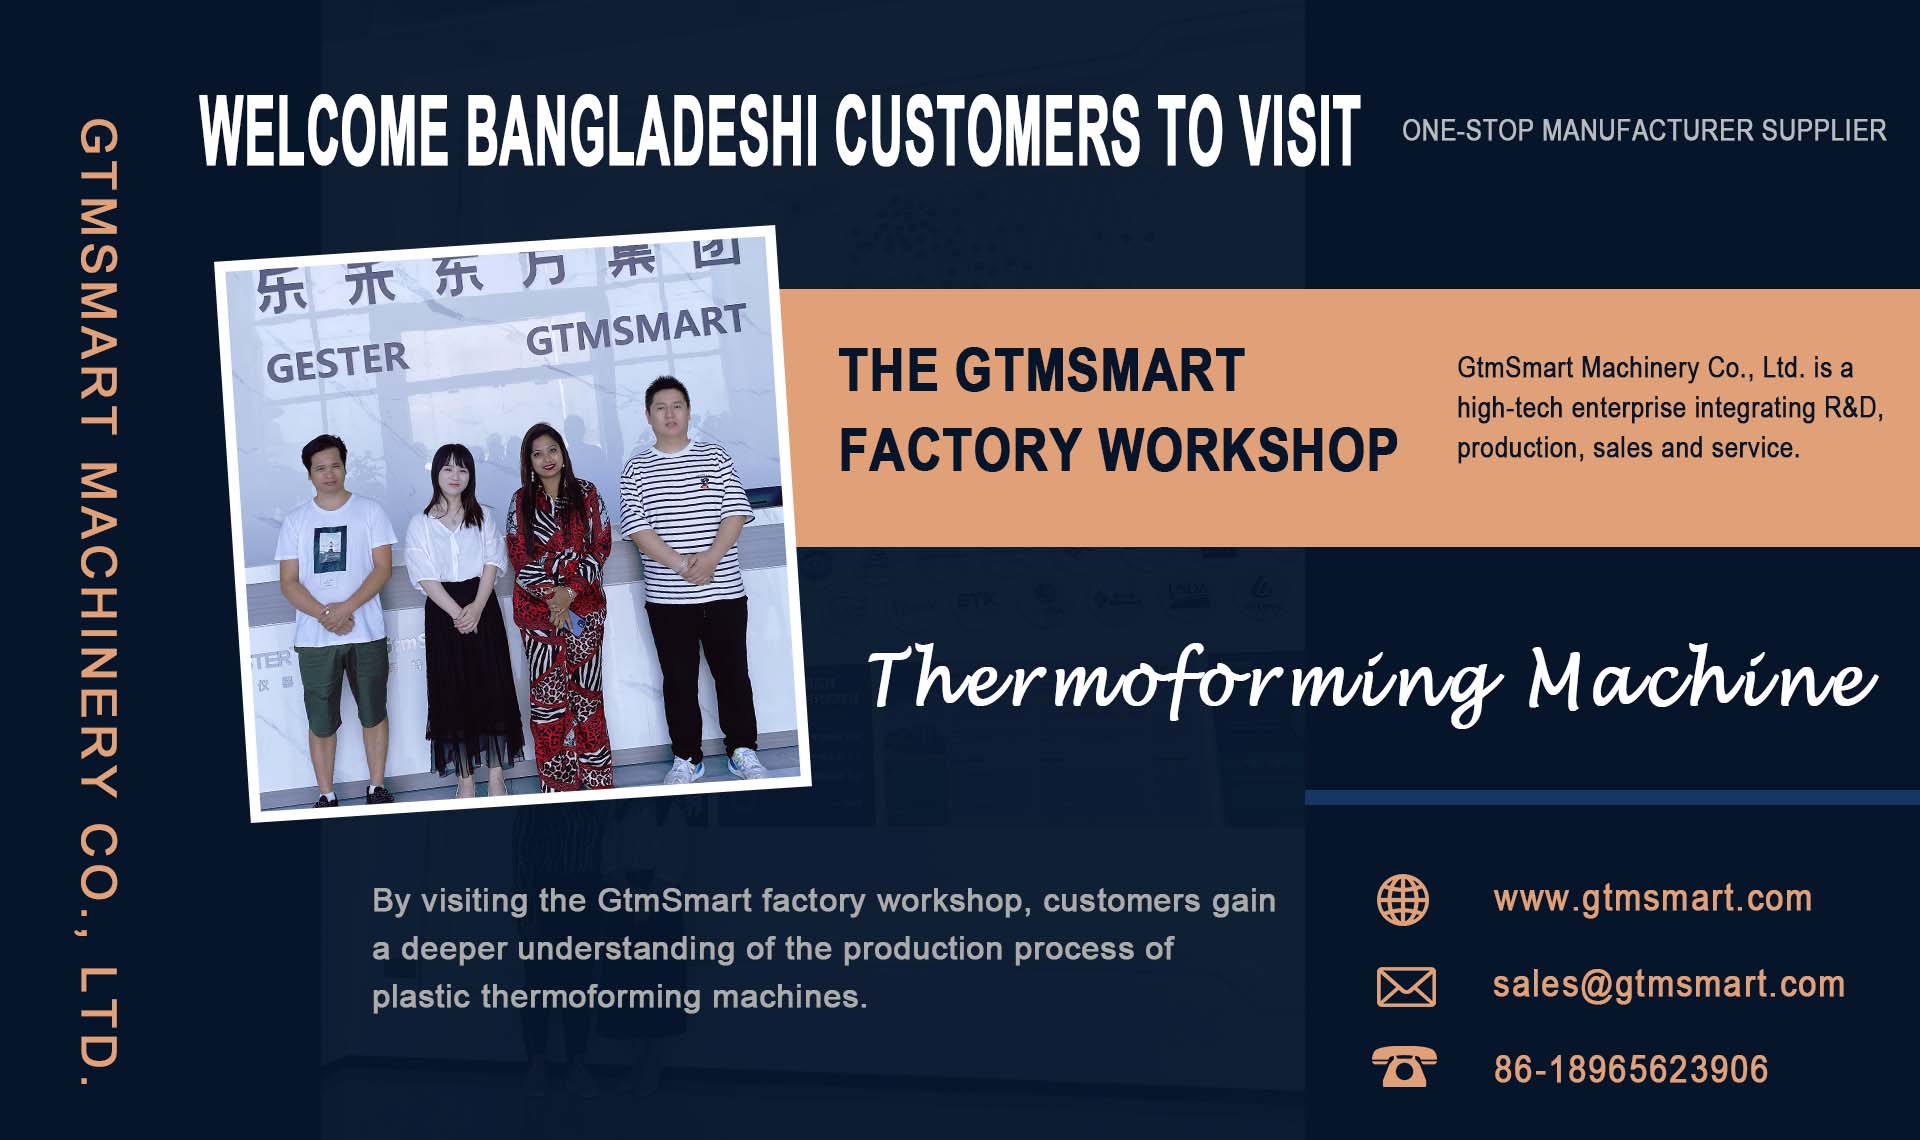 欢迎孟加拉国客户参观GtmSmart工厂车间